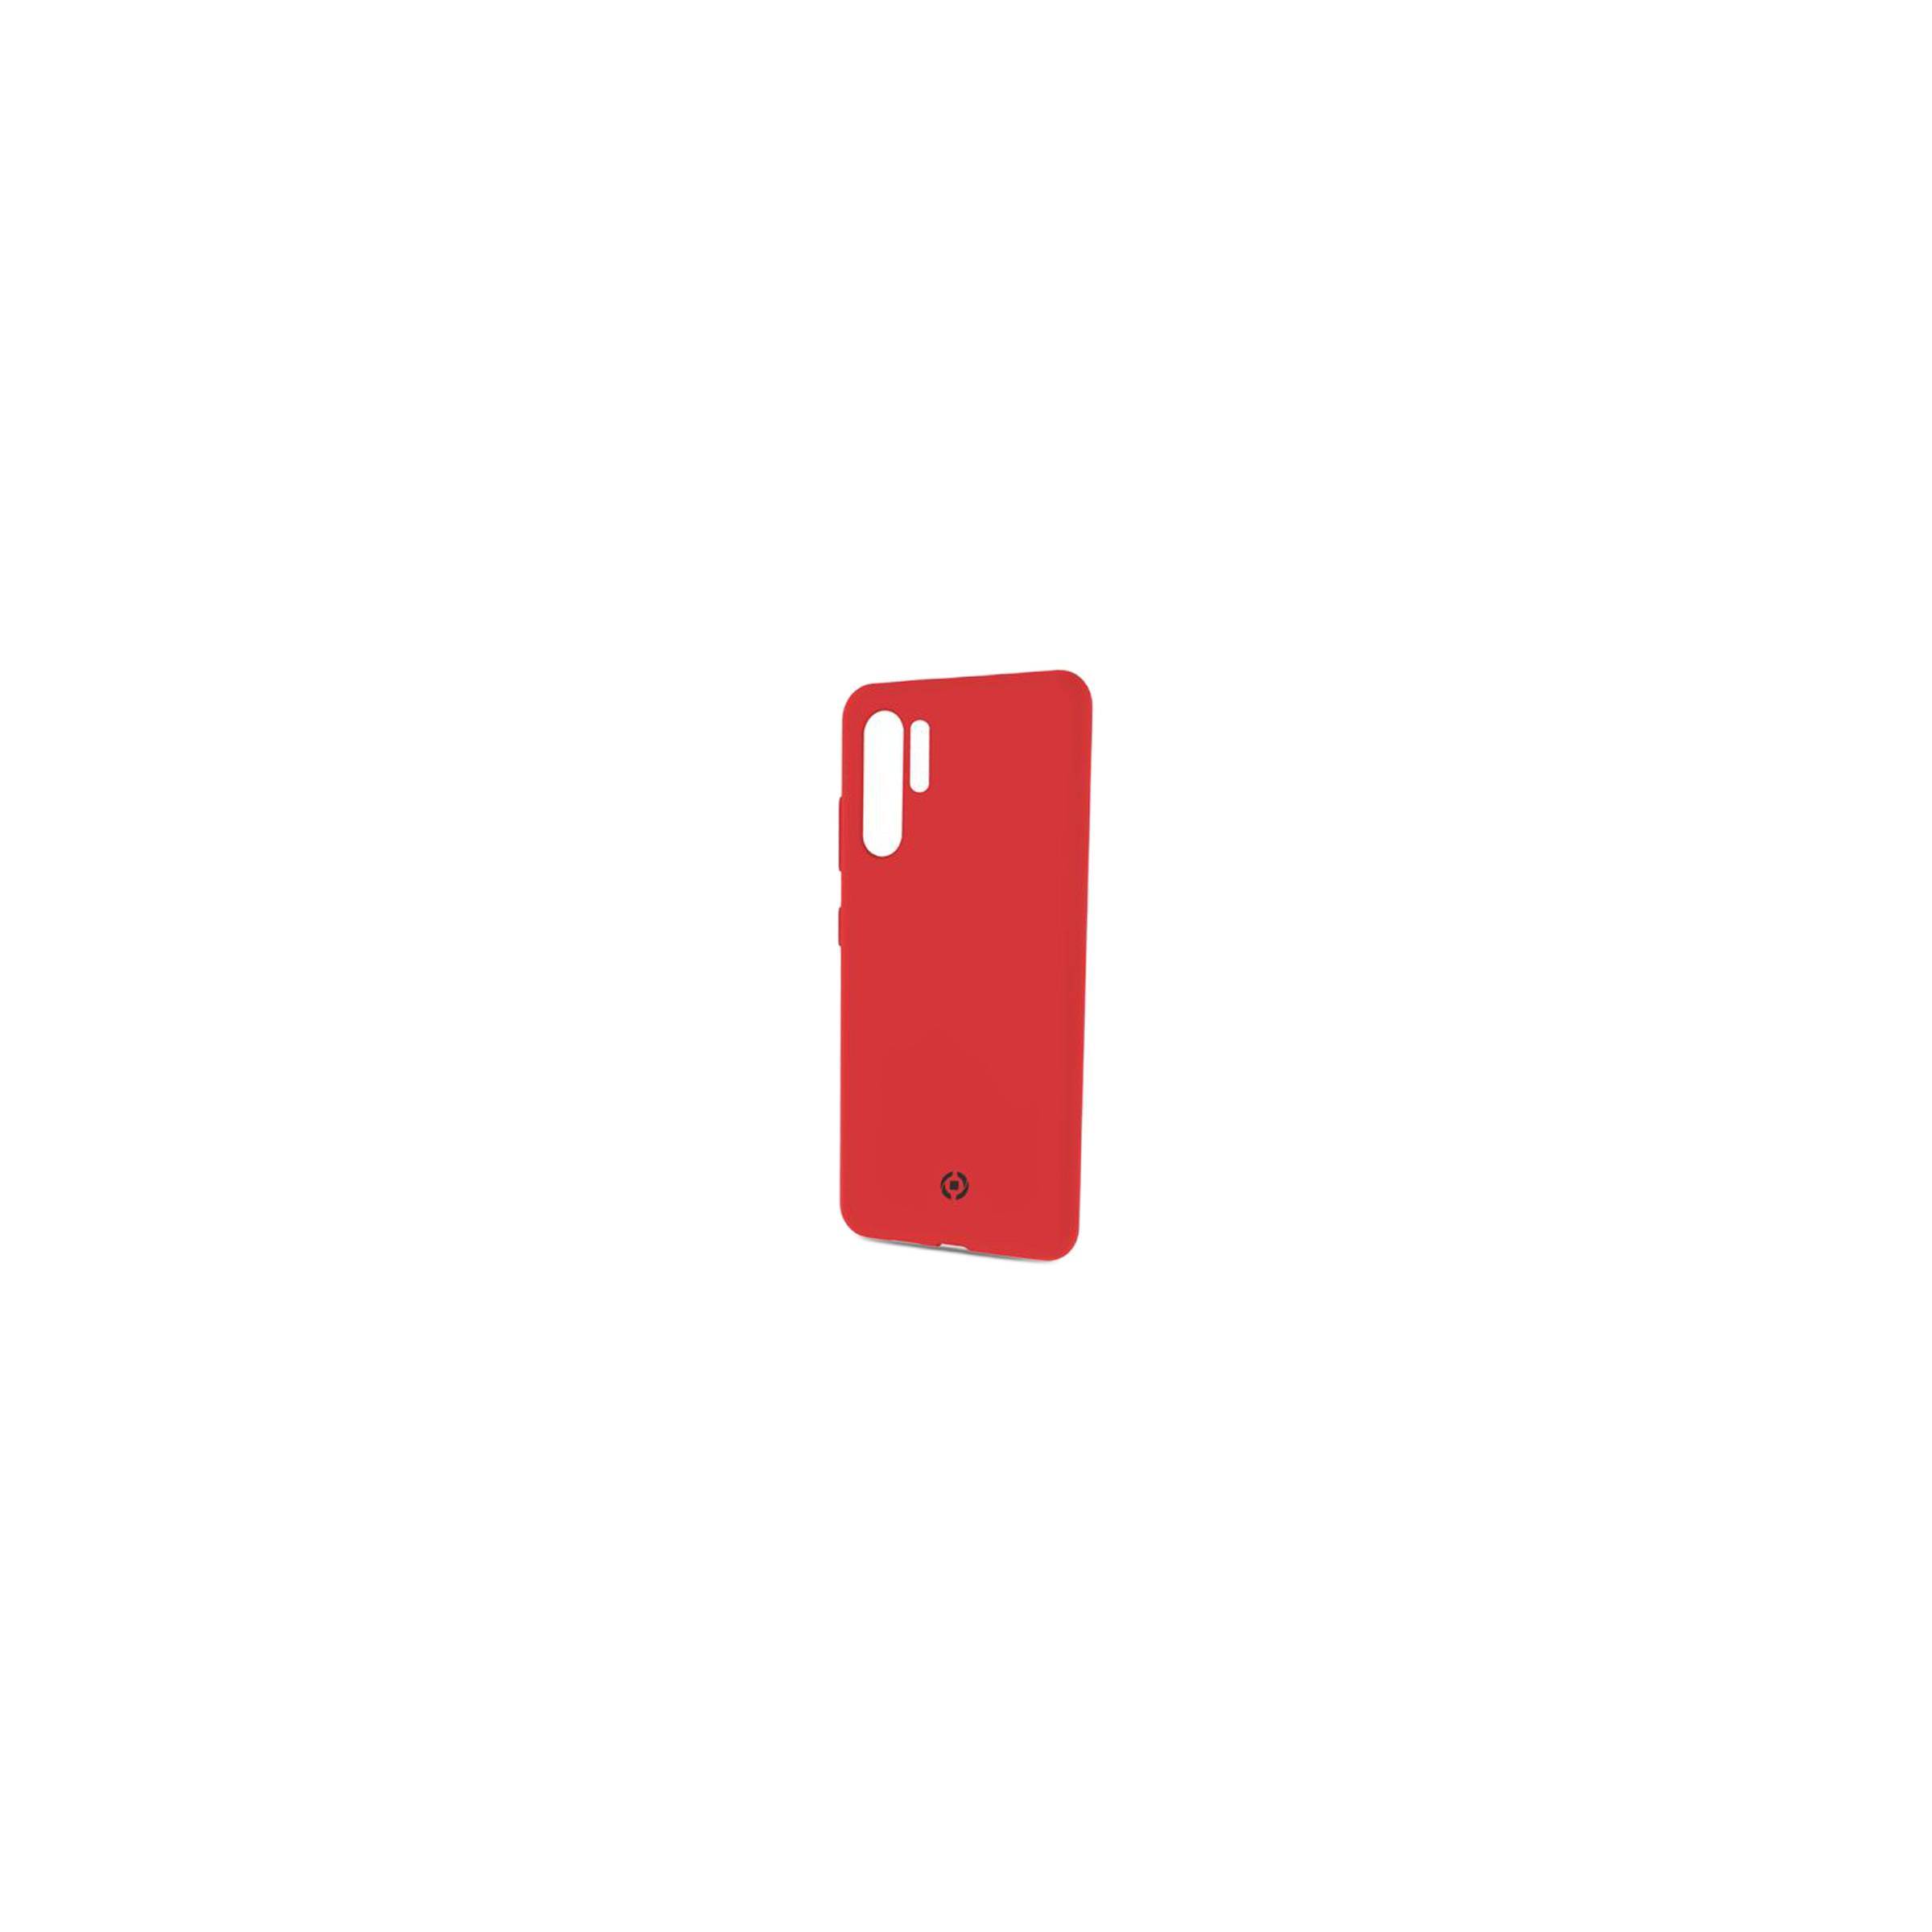 Bilde av Celly Feeling Huawei P30 Pro Silikone Cover, Rød